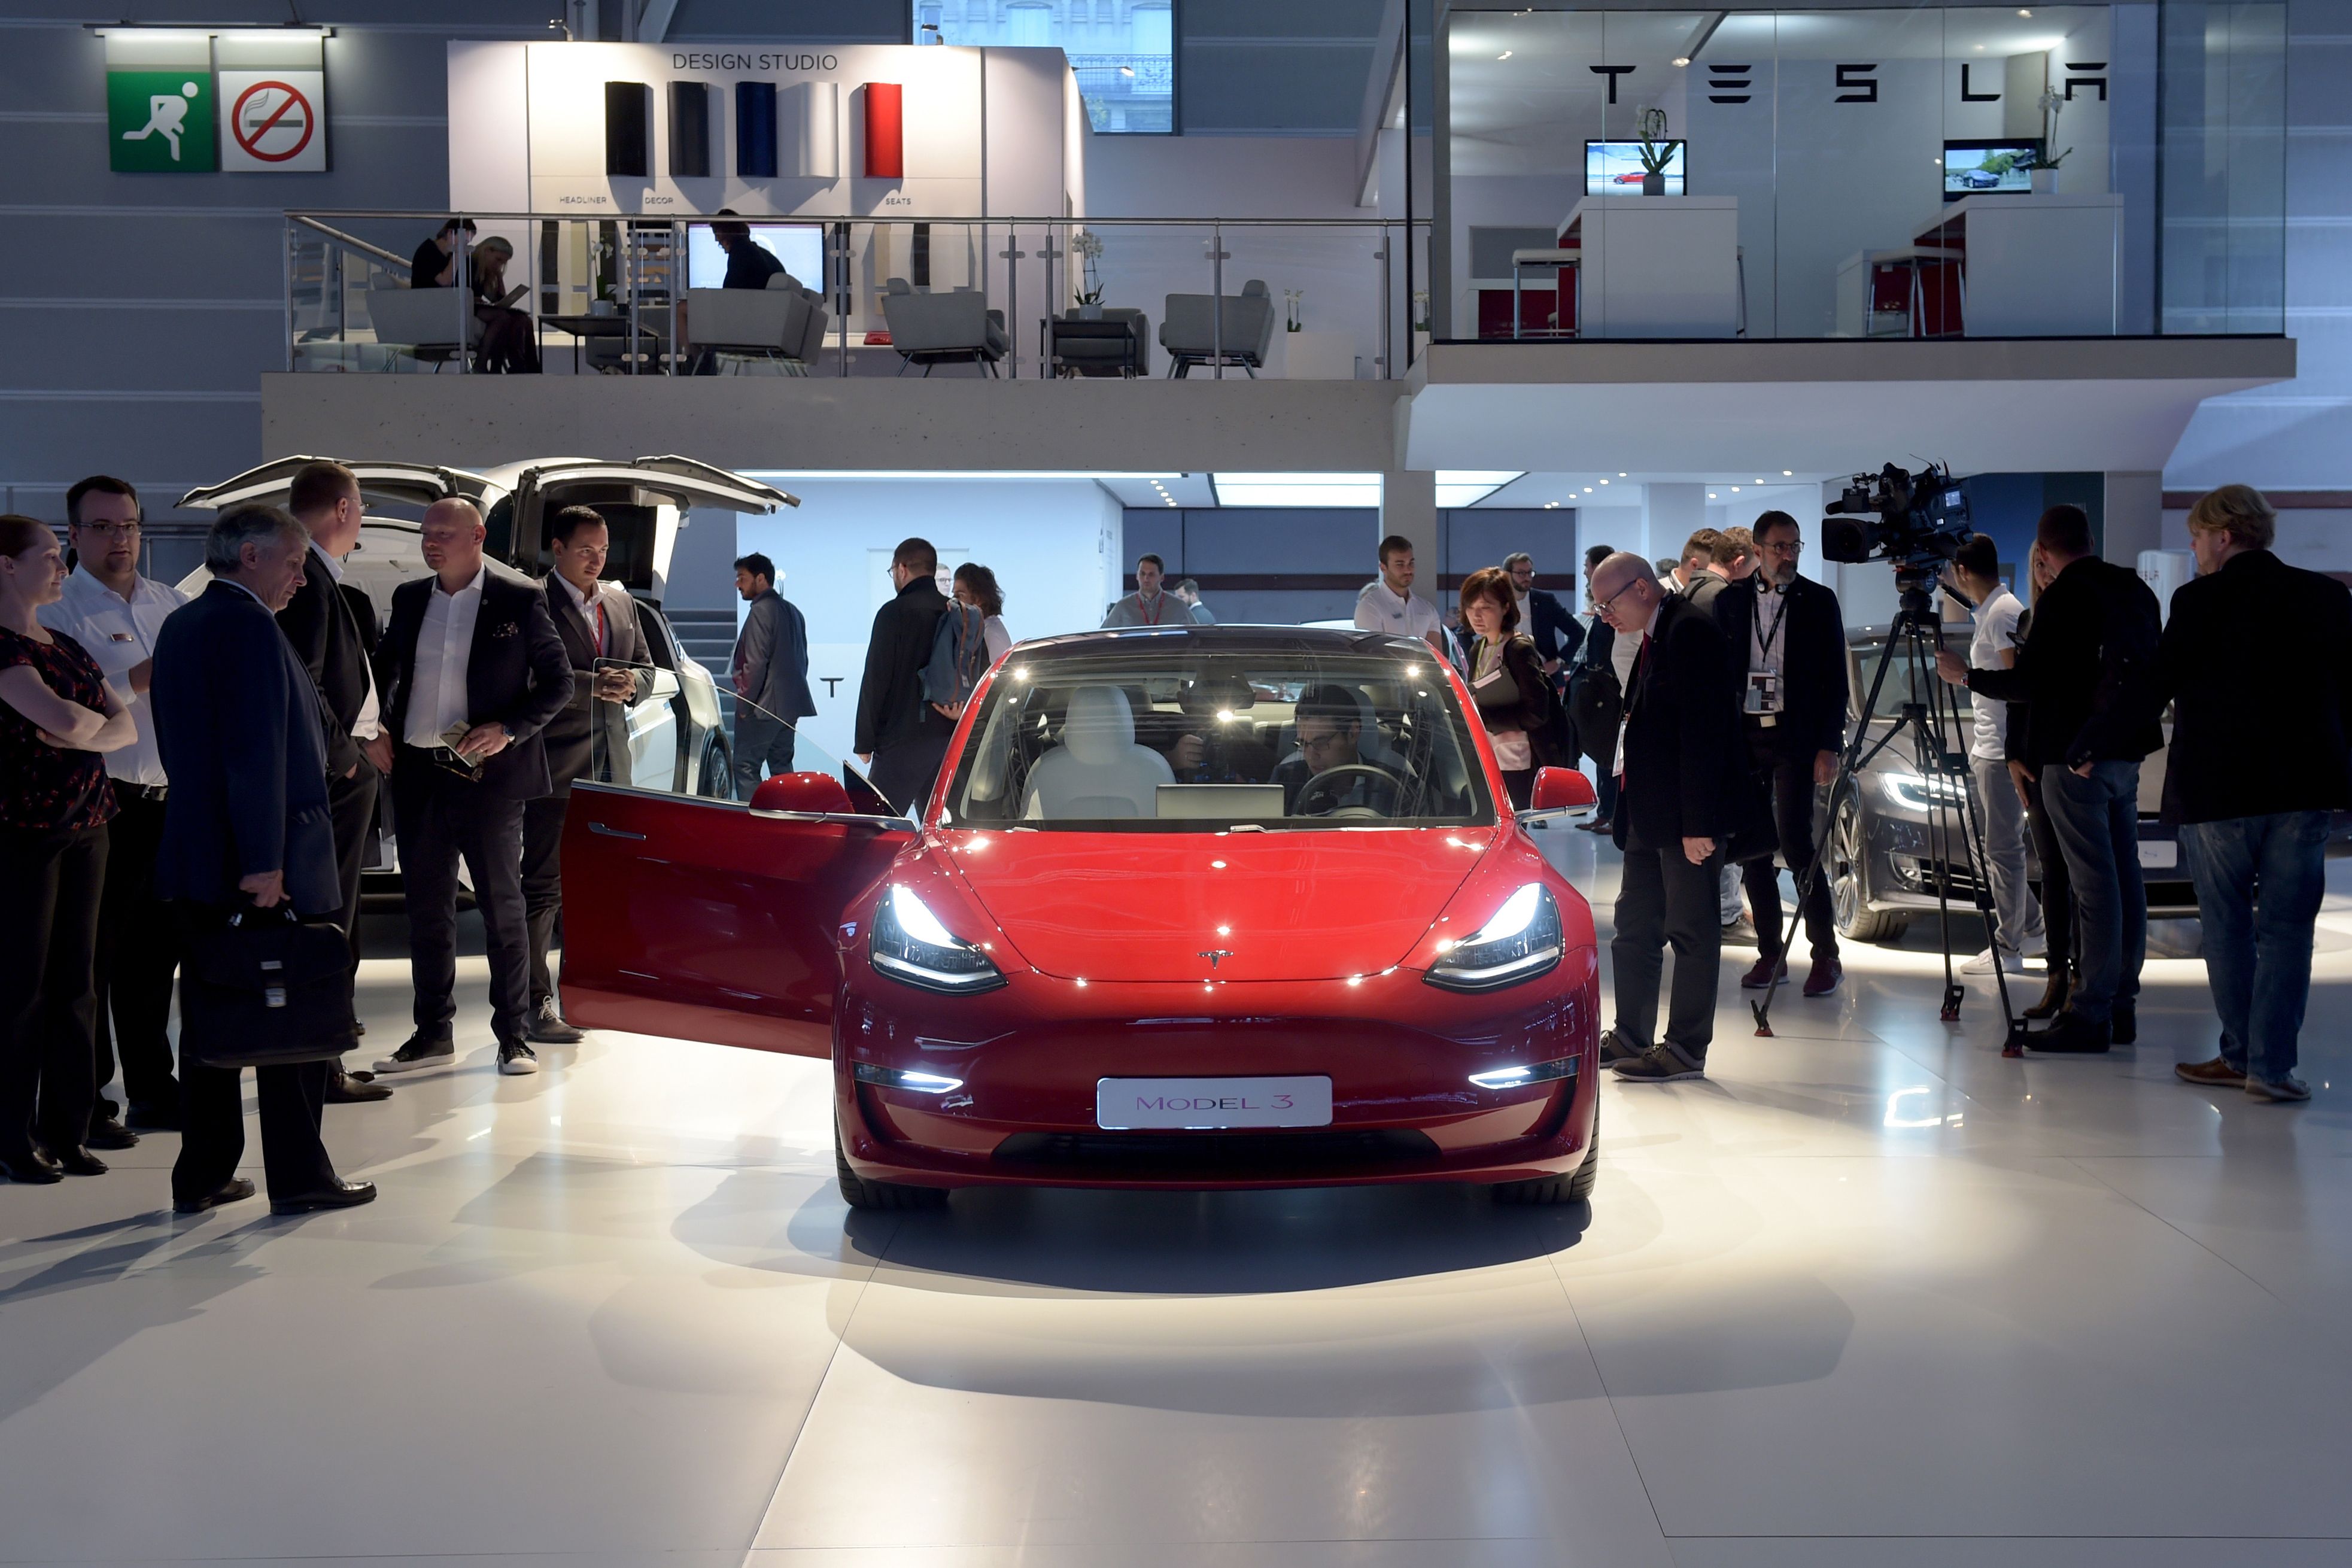 U.S. regulators take aim at Tesla over Model 3 safety claims